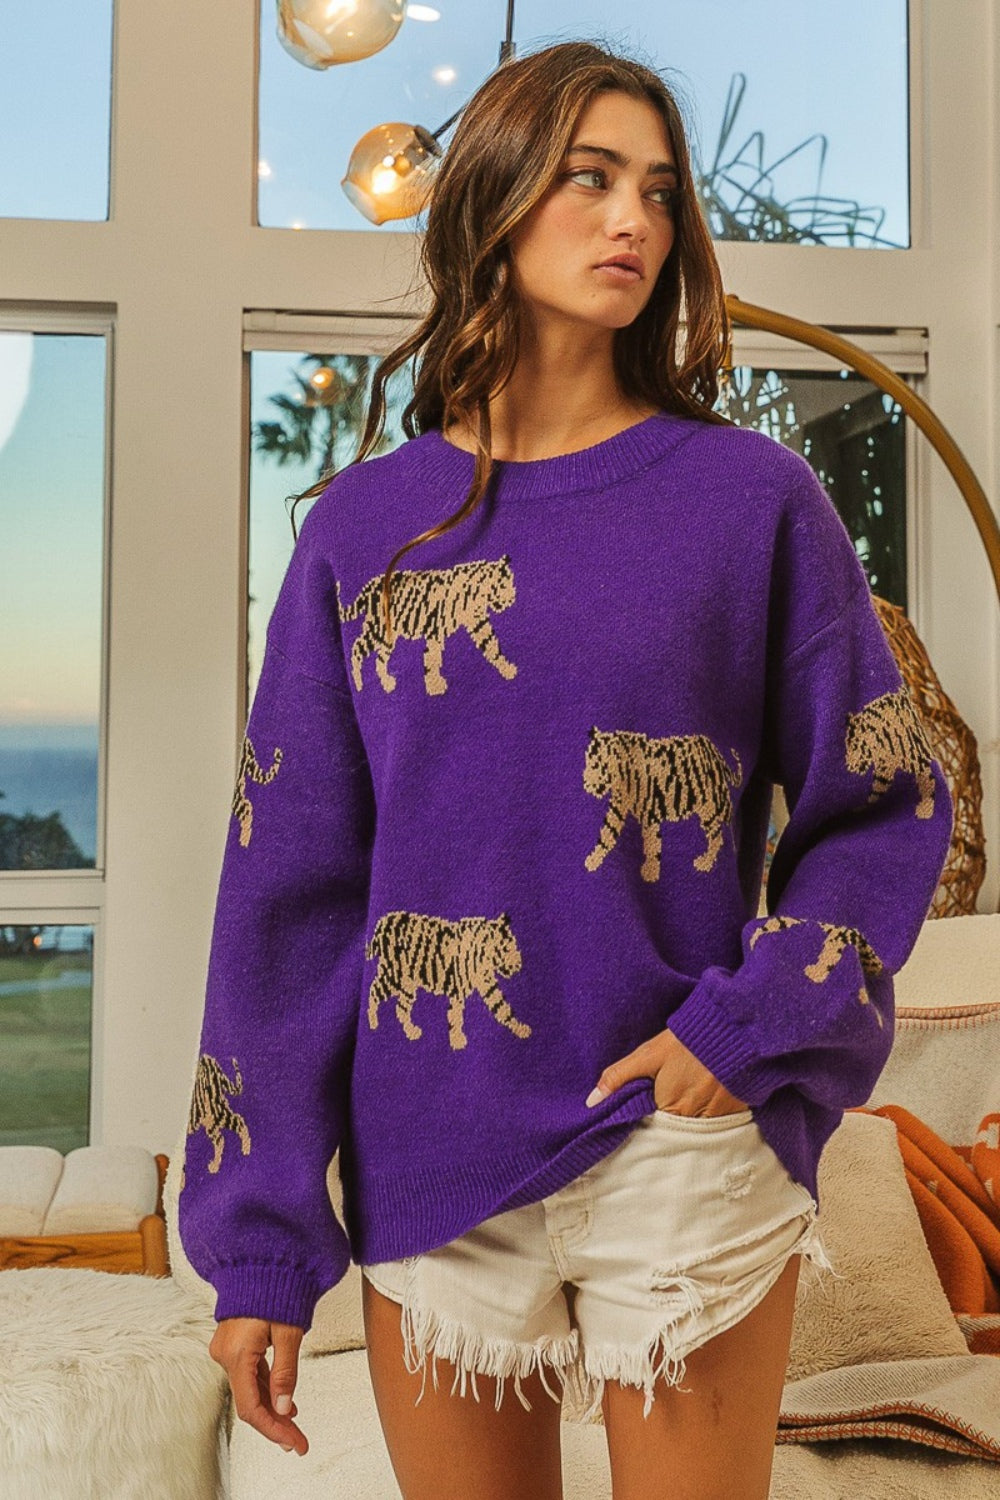 BiBi Tiger Pattern Sweater